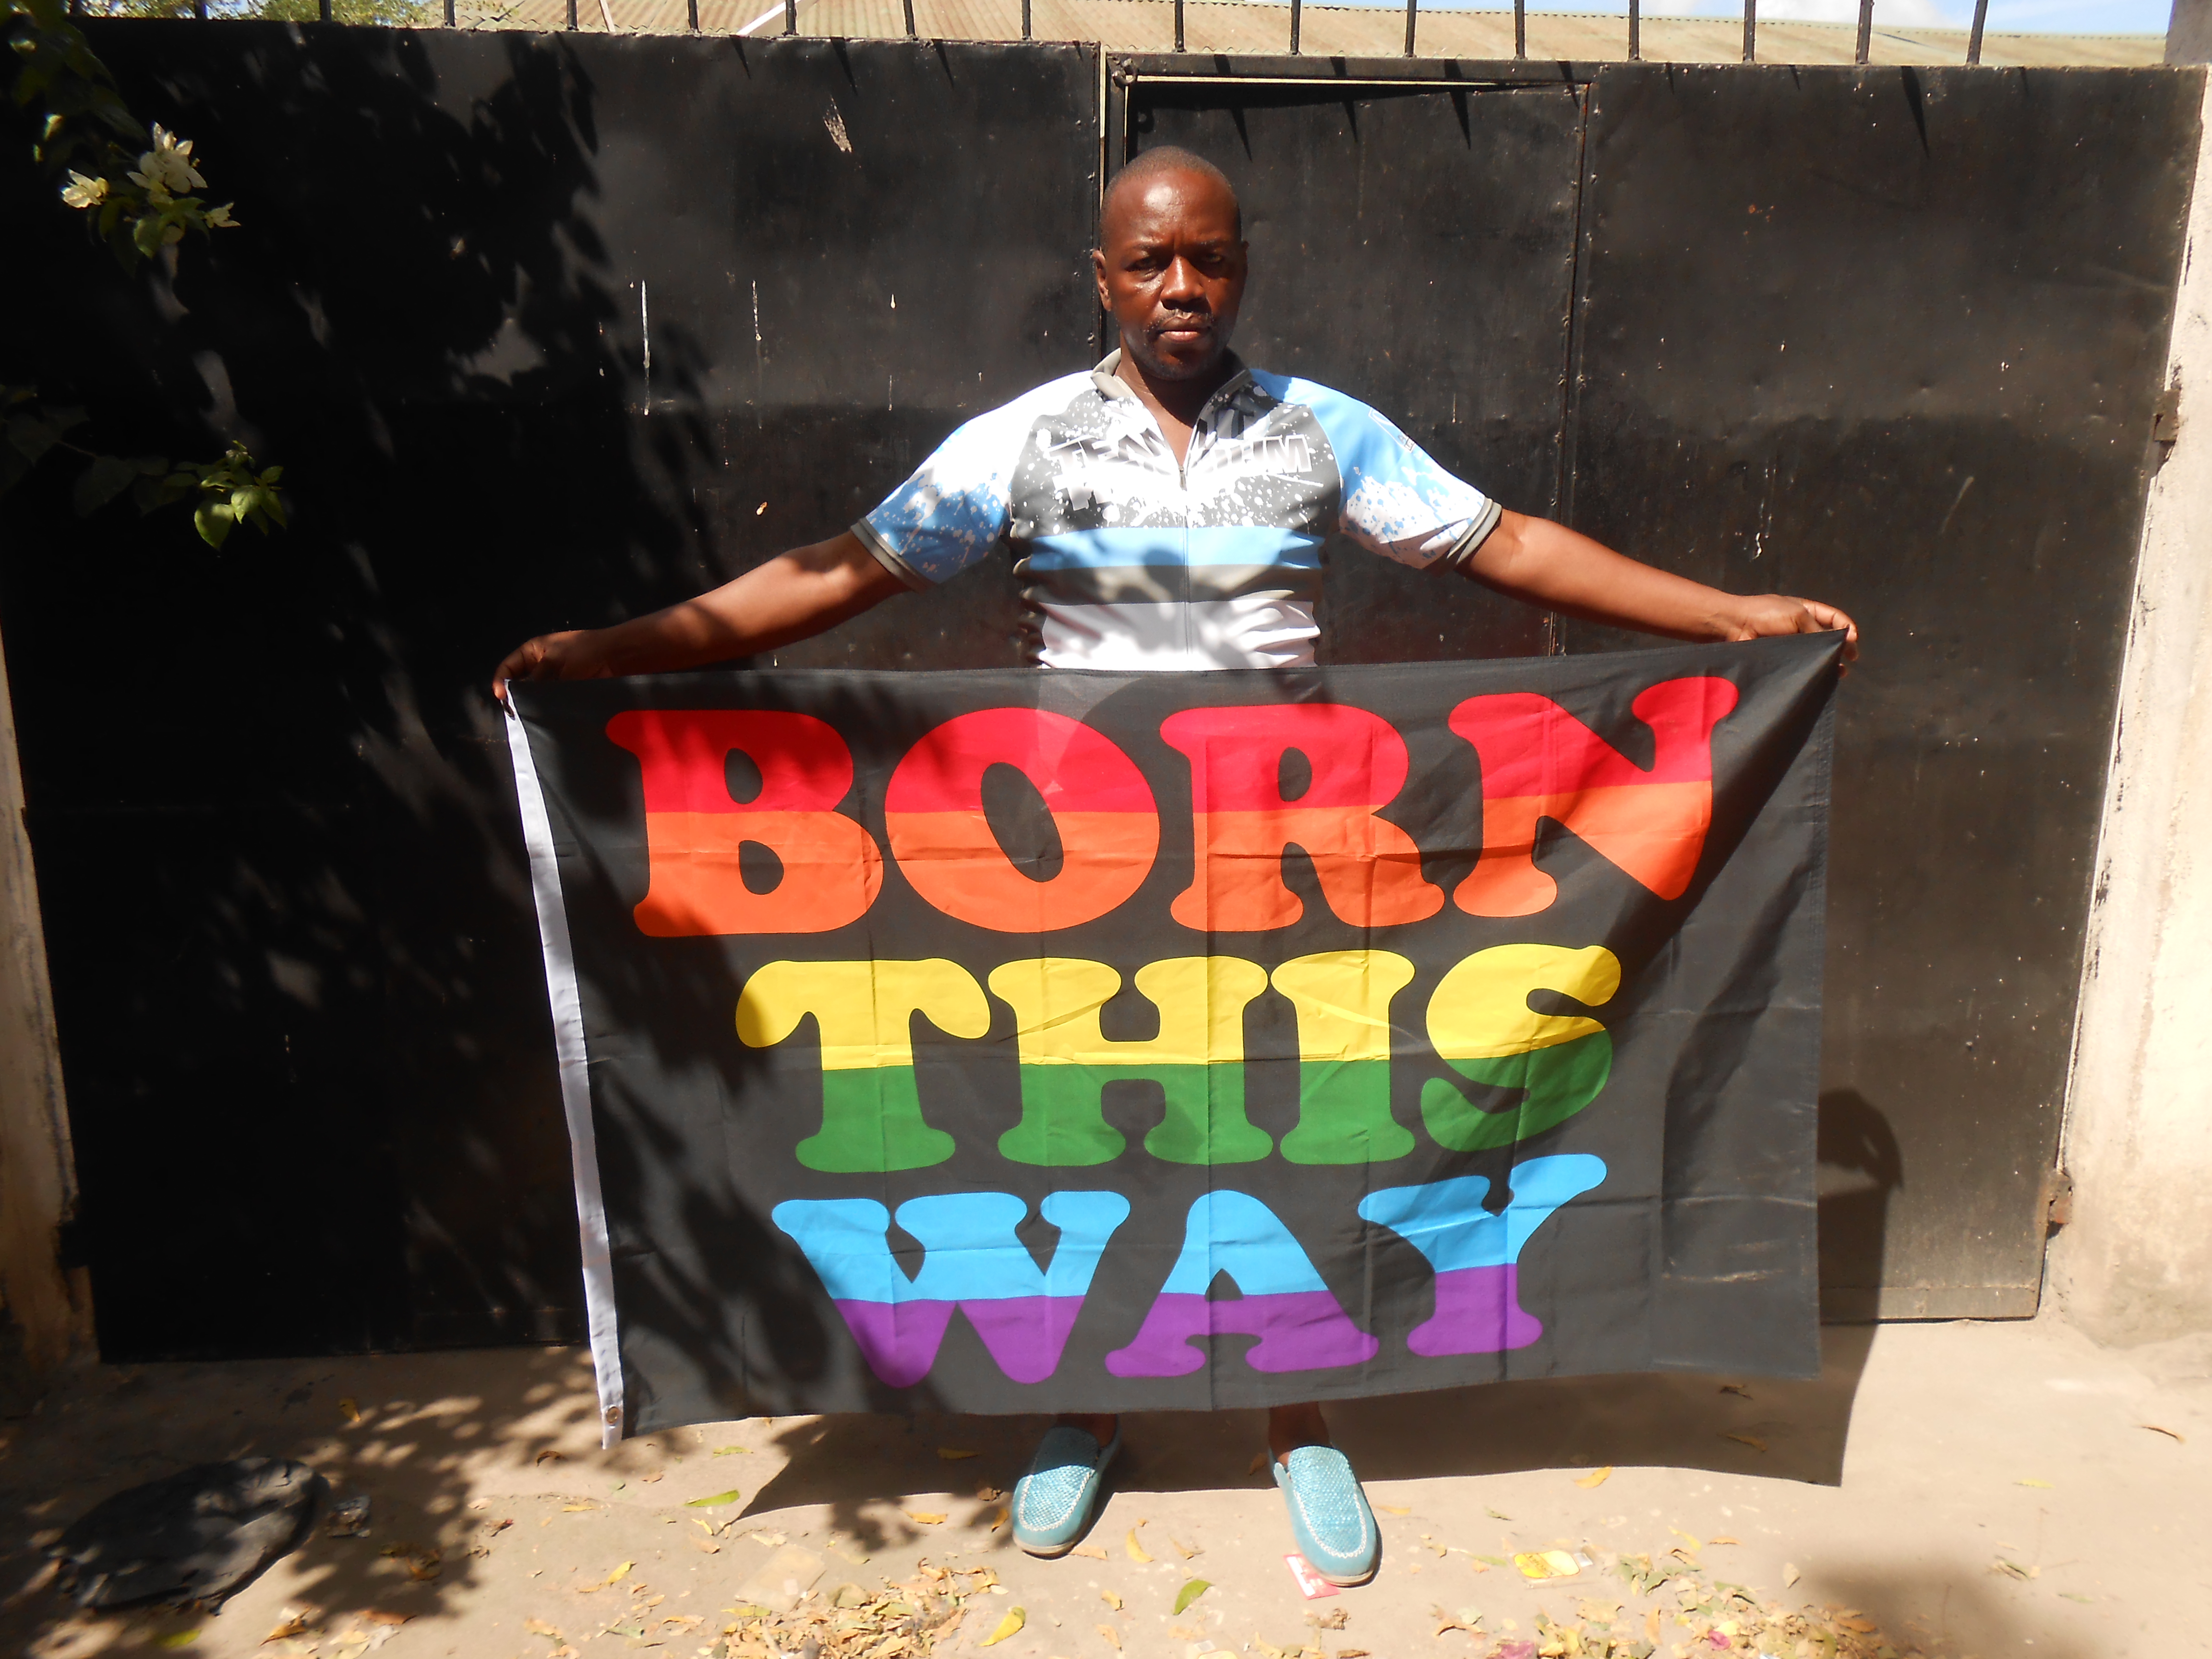 Tanzania prohíbe los lubricantes para “controlar” la homosexualidad